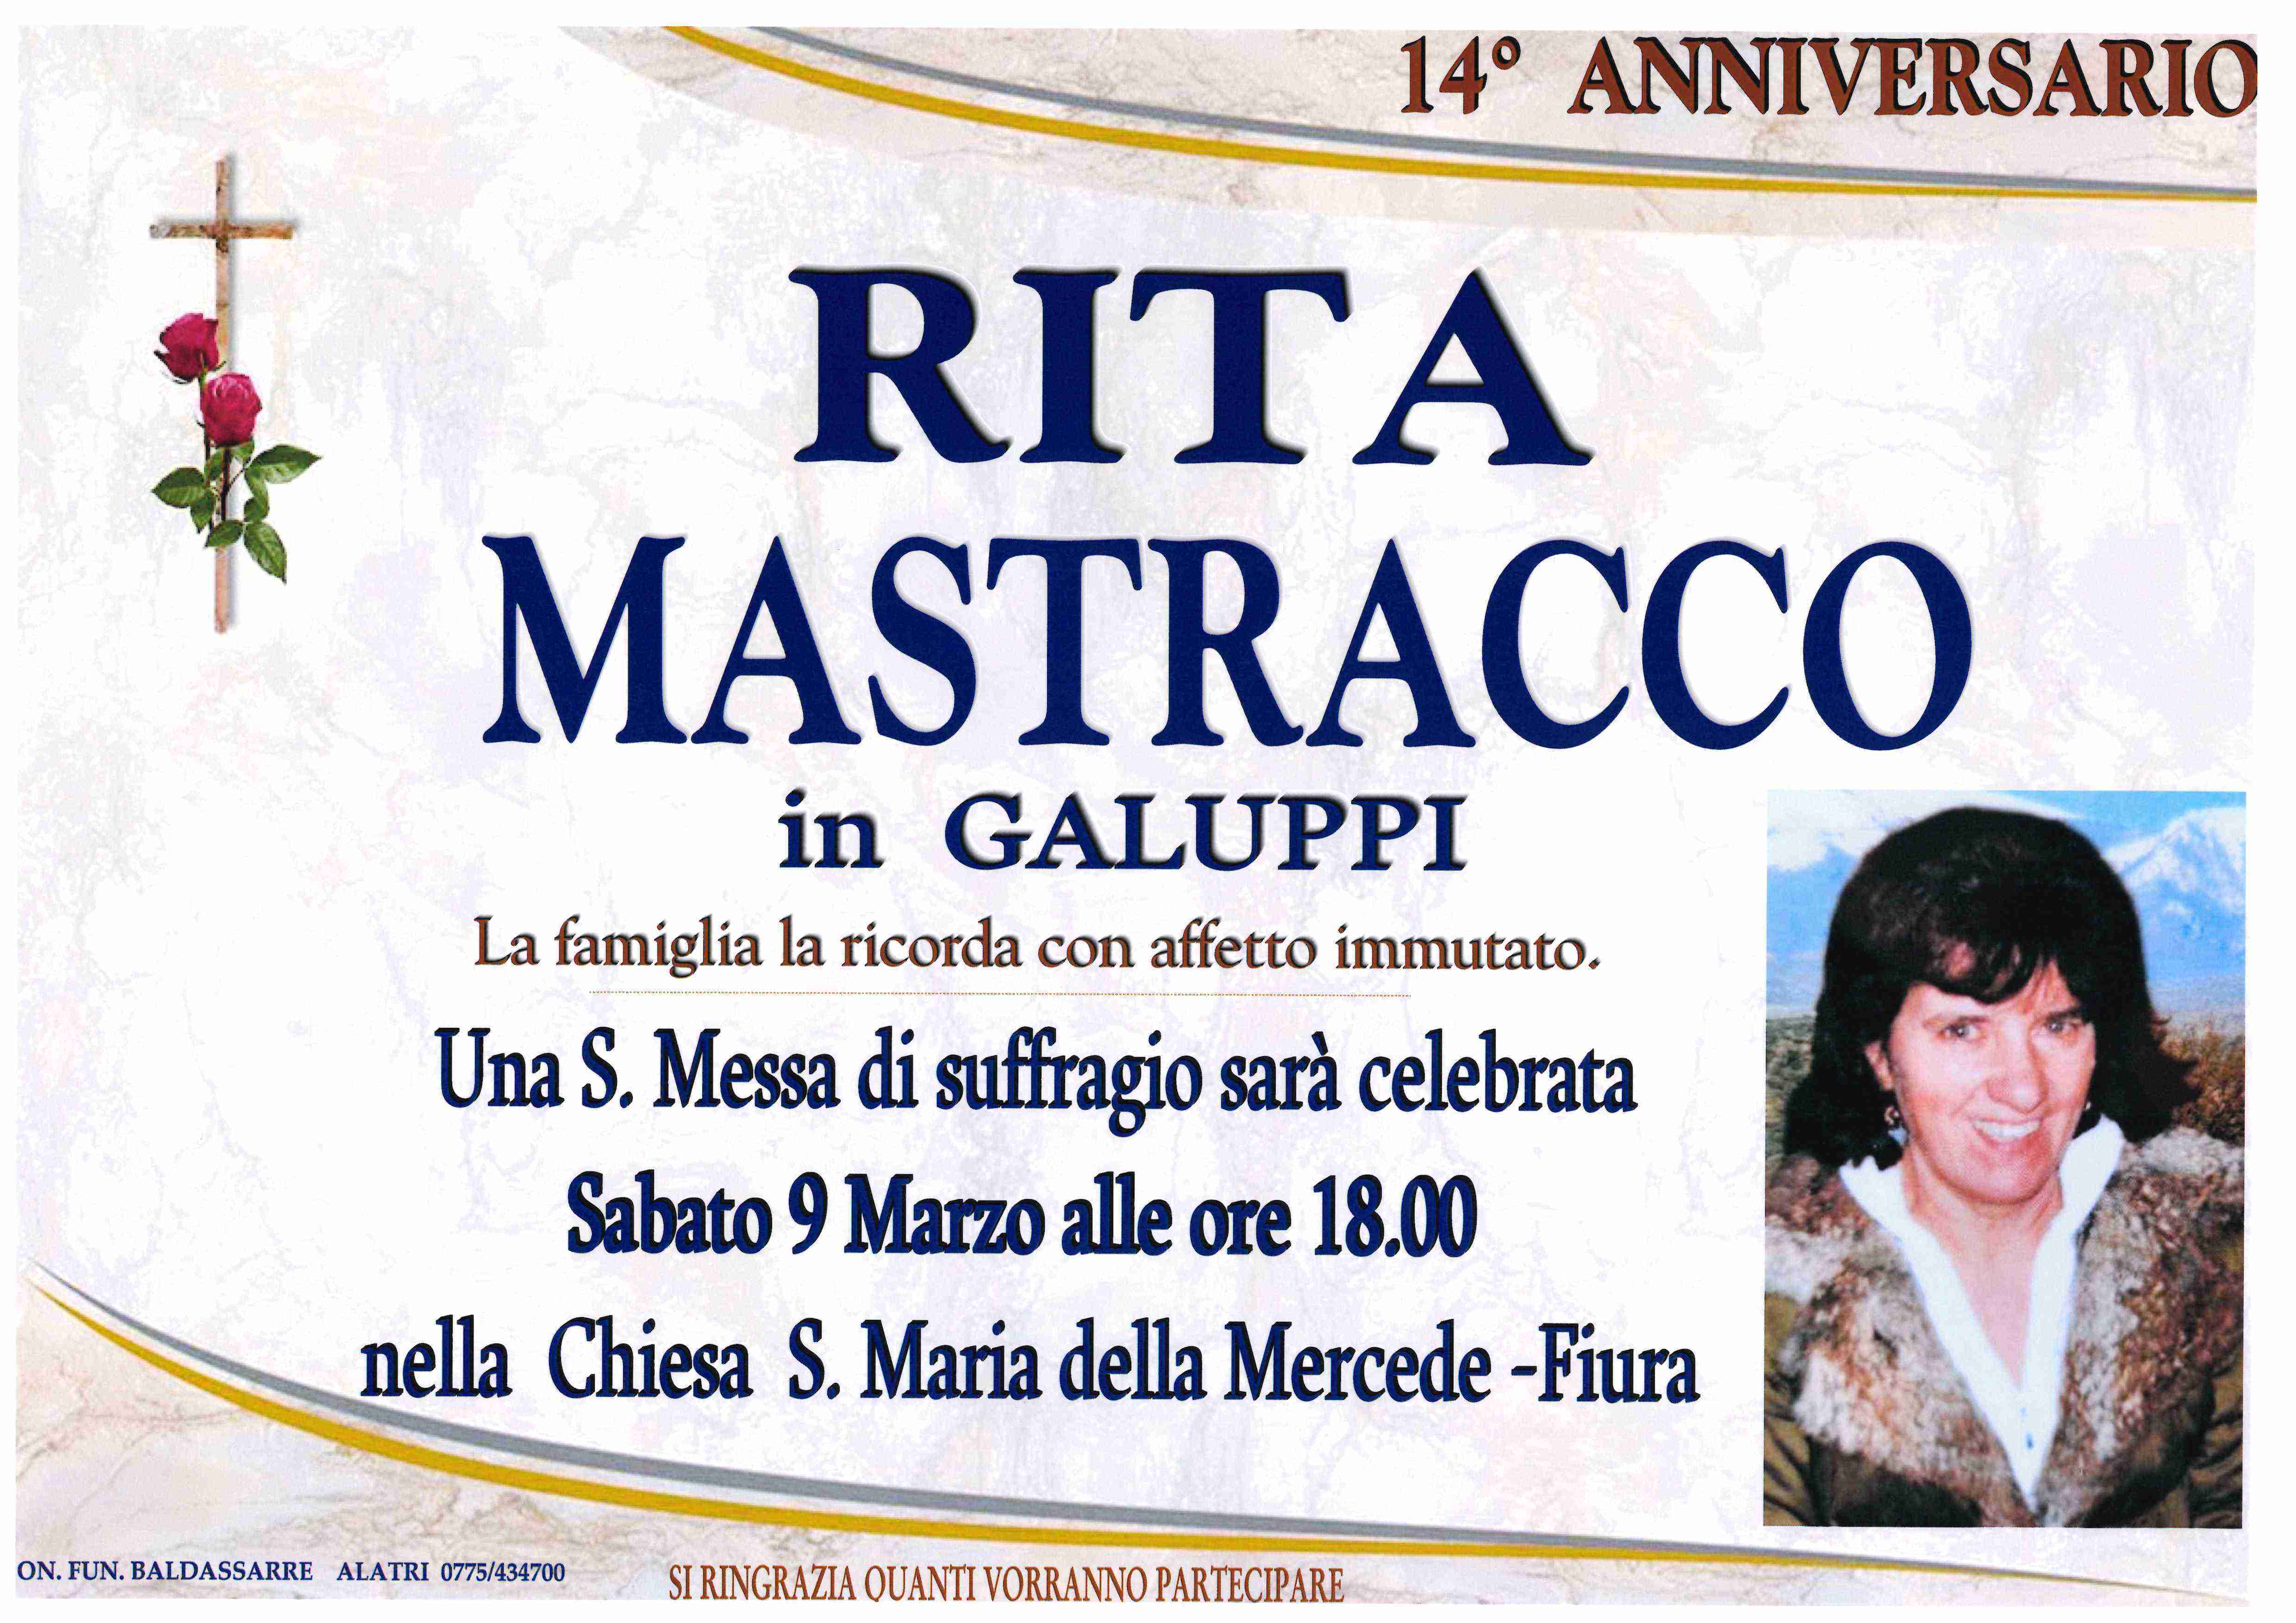 Rita  Mastracco